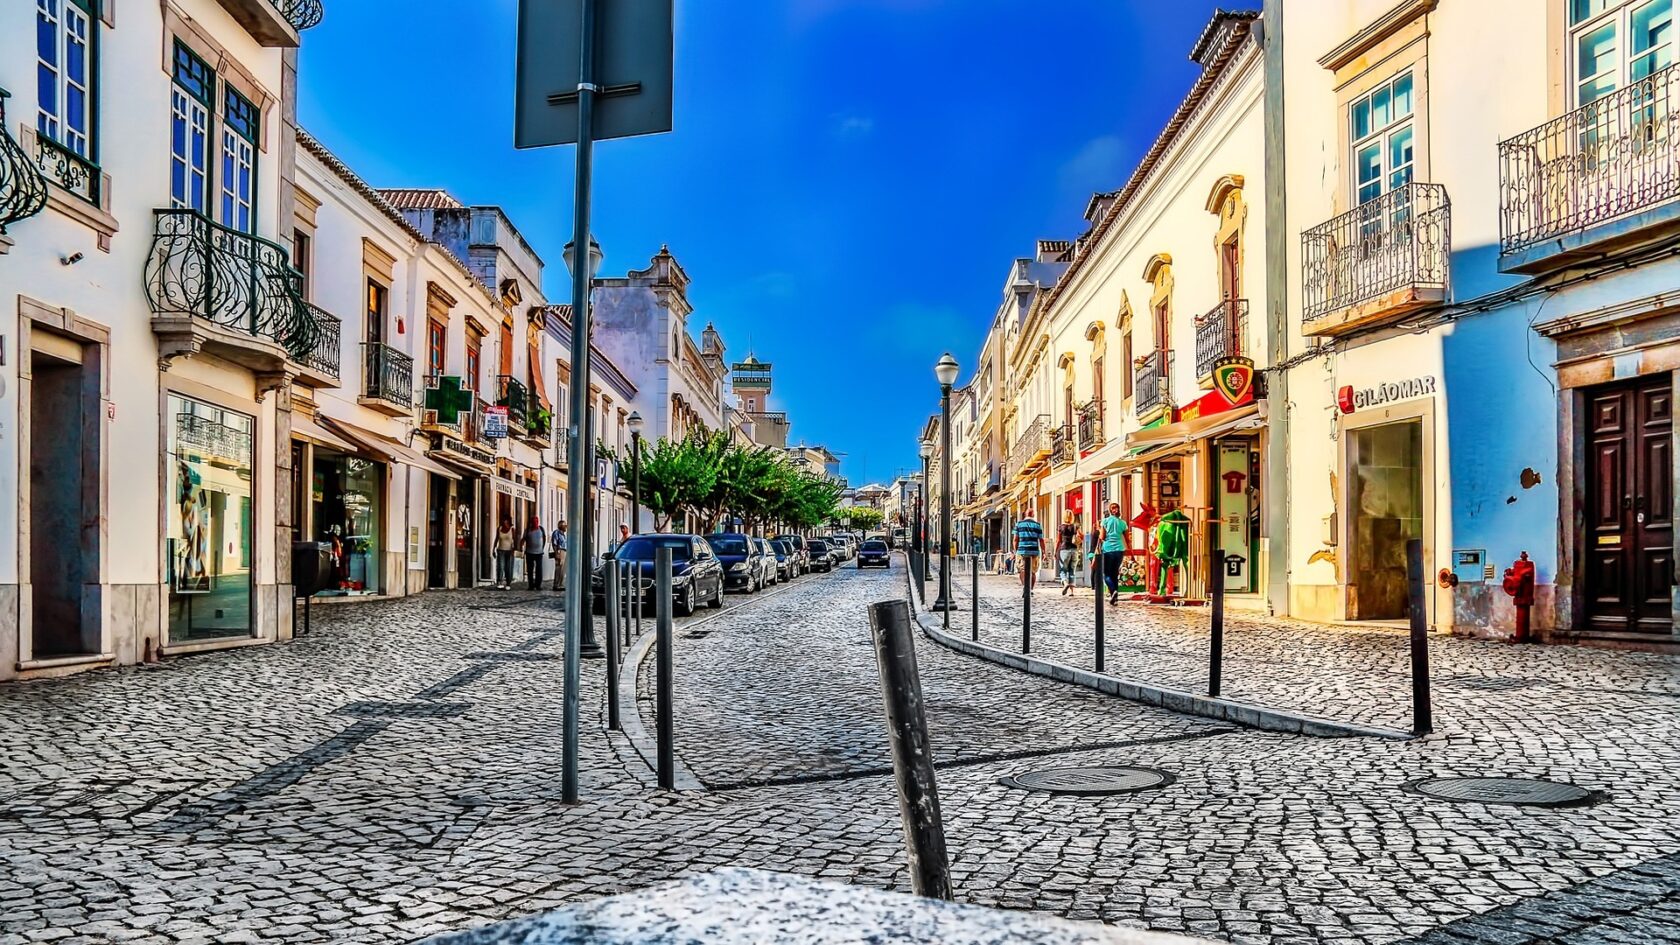 Streets in Algarve, Portugal (an Atlantis site).